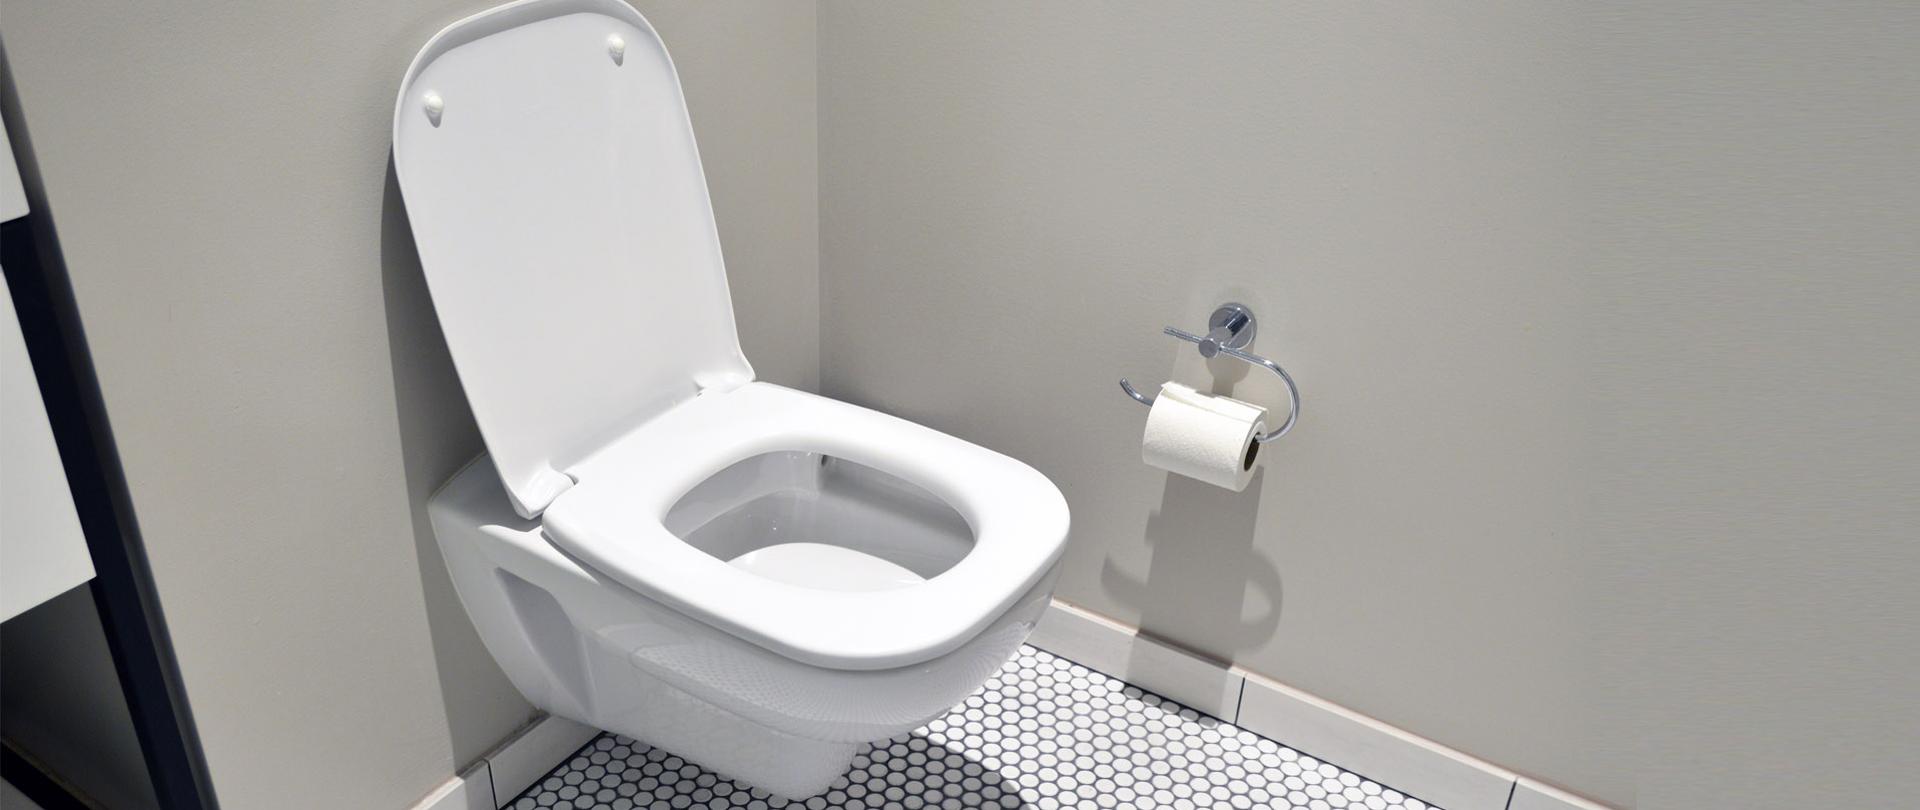 Zdjęcie przedstawiające toaletę. Obok wisi rolka papieru toaletowego.